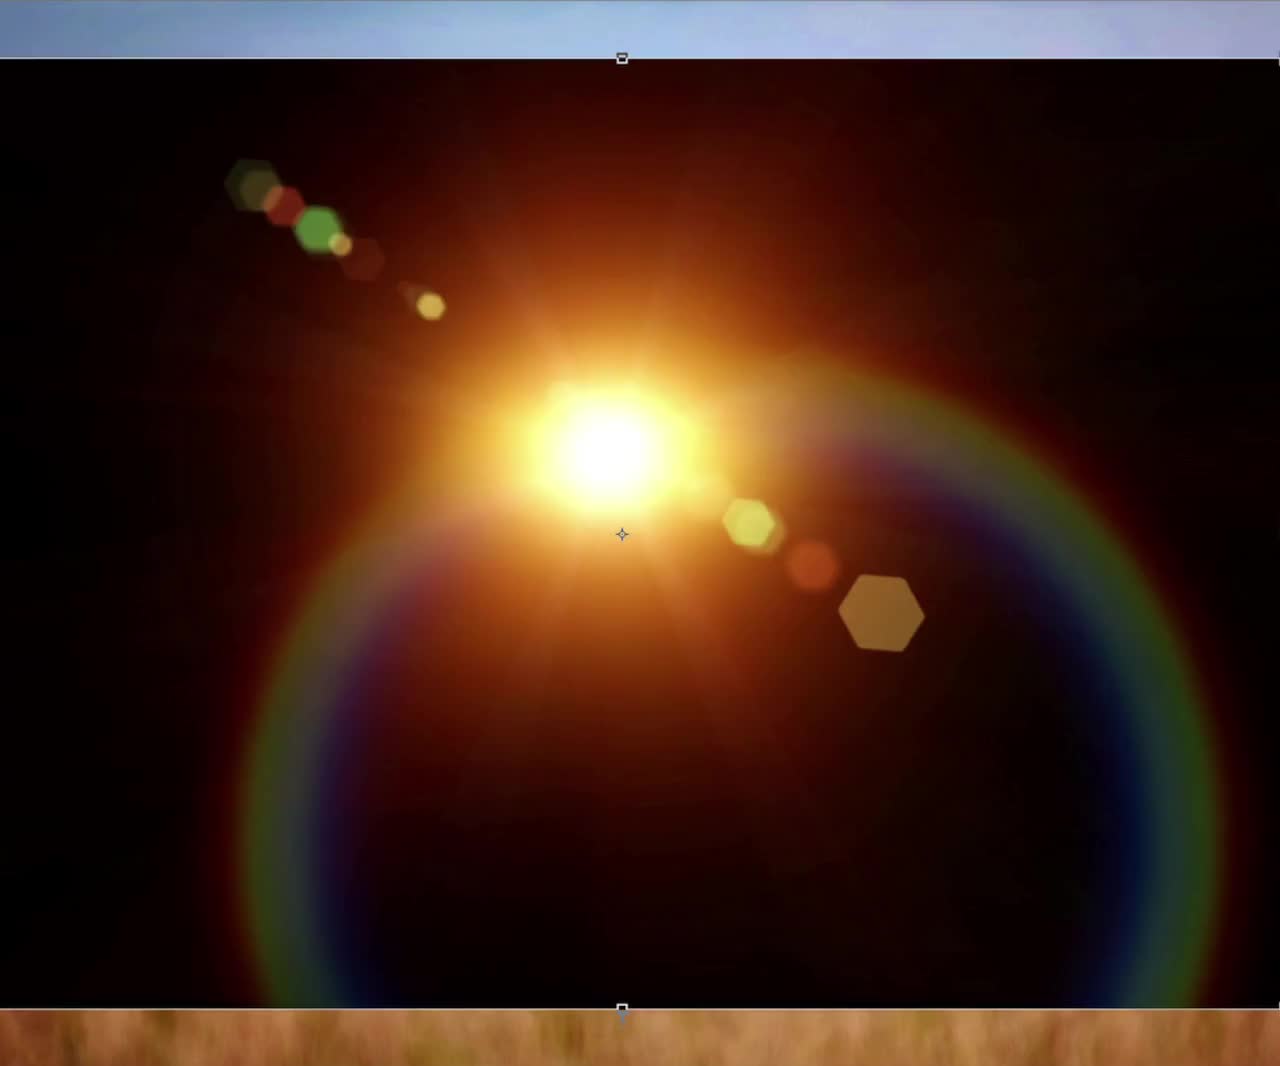 rainbow lens flare overlay